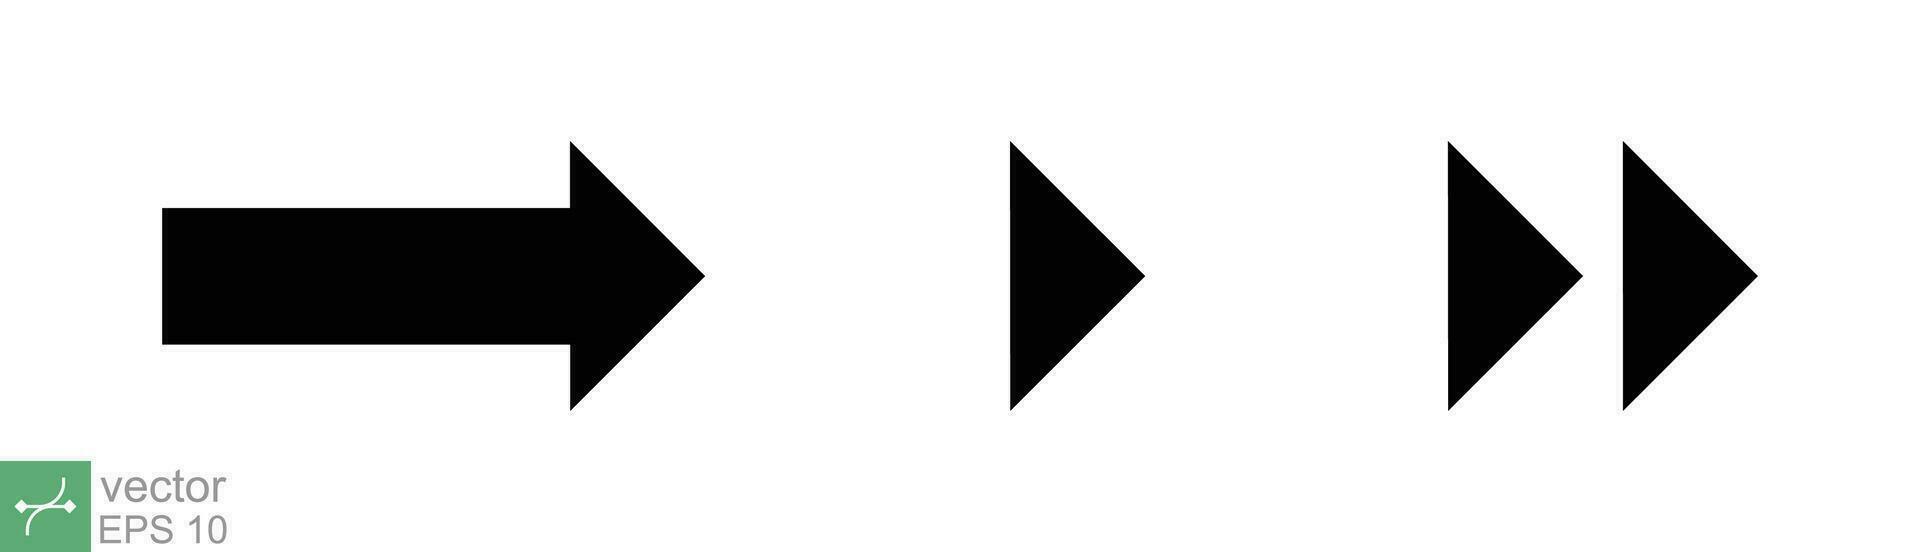 pil vektor ikon samling. höger, vänster, upp, ner, annorlunda svart riktning tecken element. vektor illustration isolerat på vit bakgrund. eps 10.